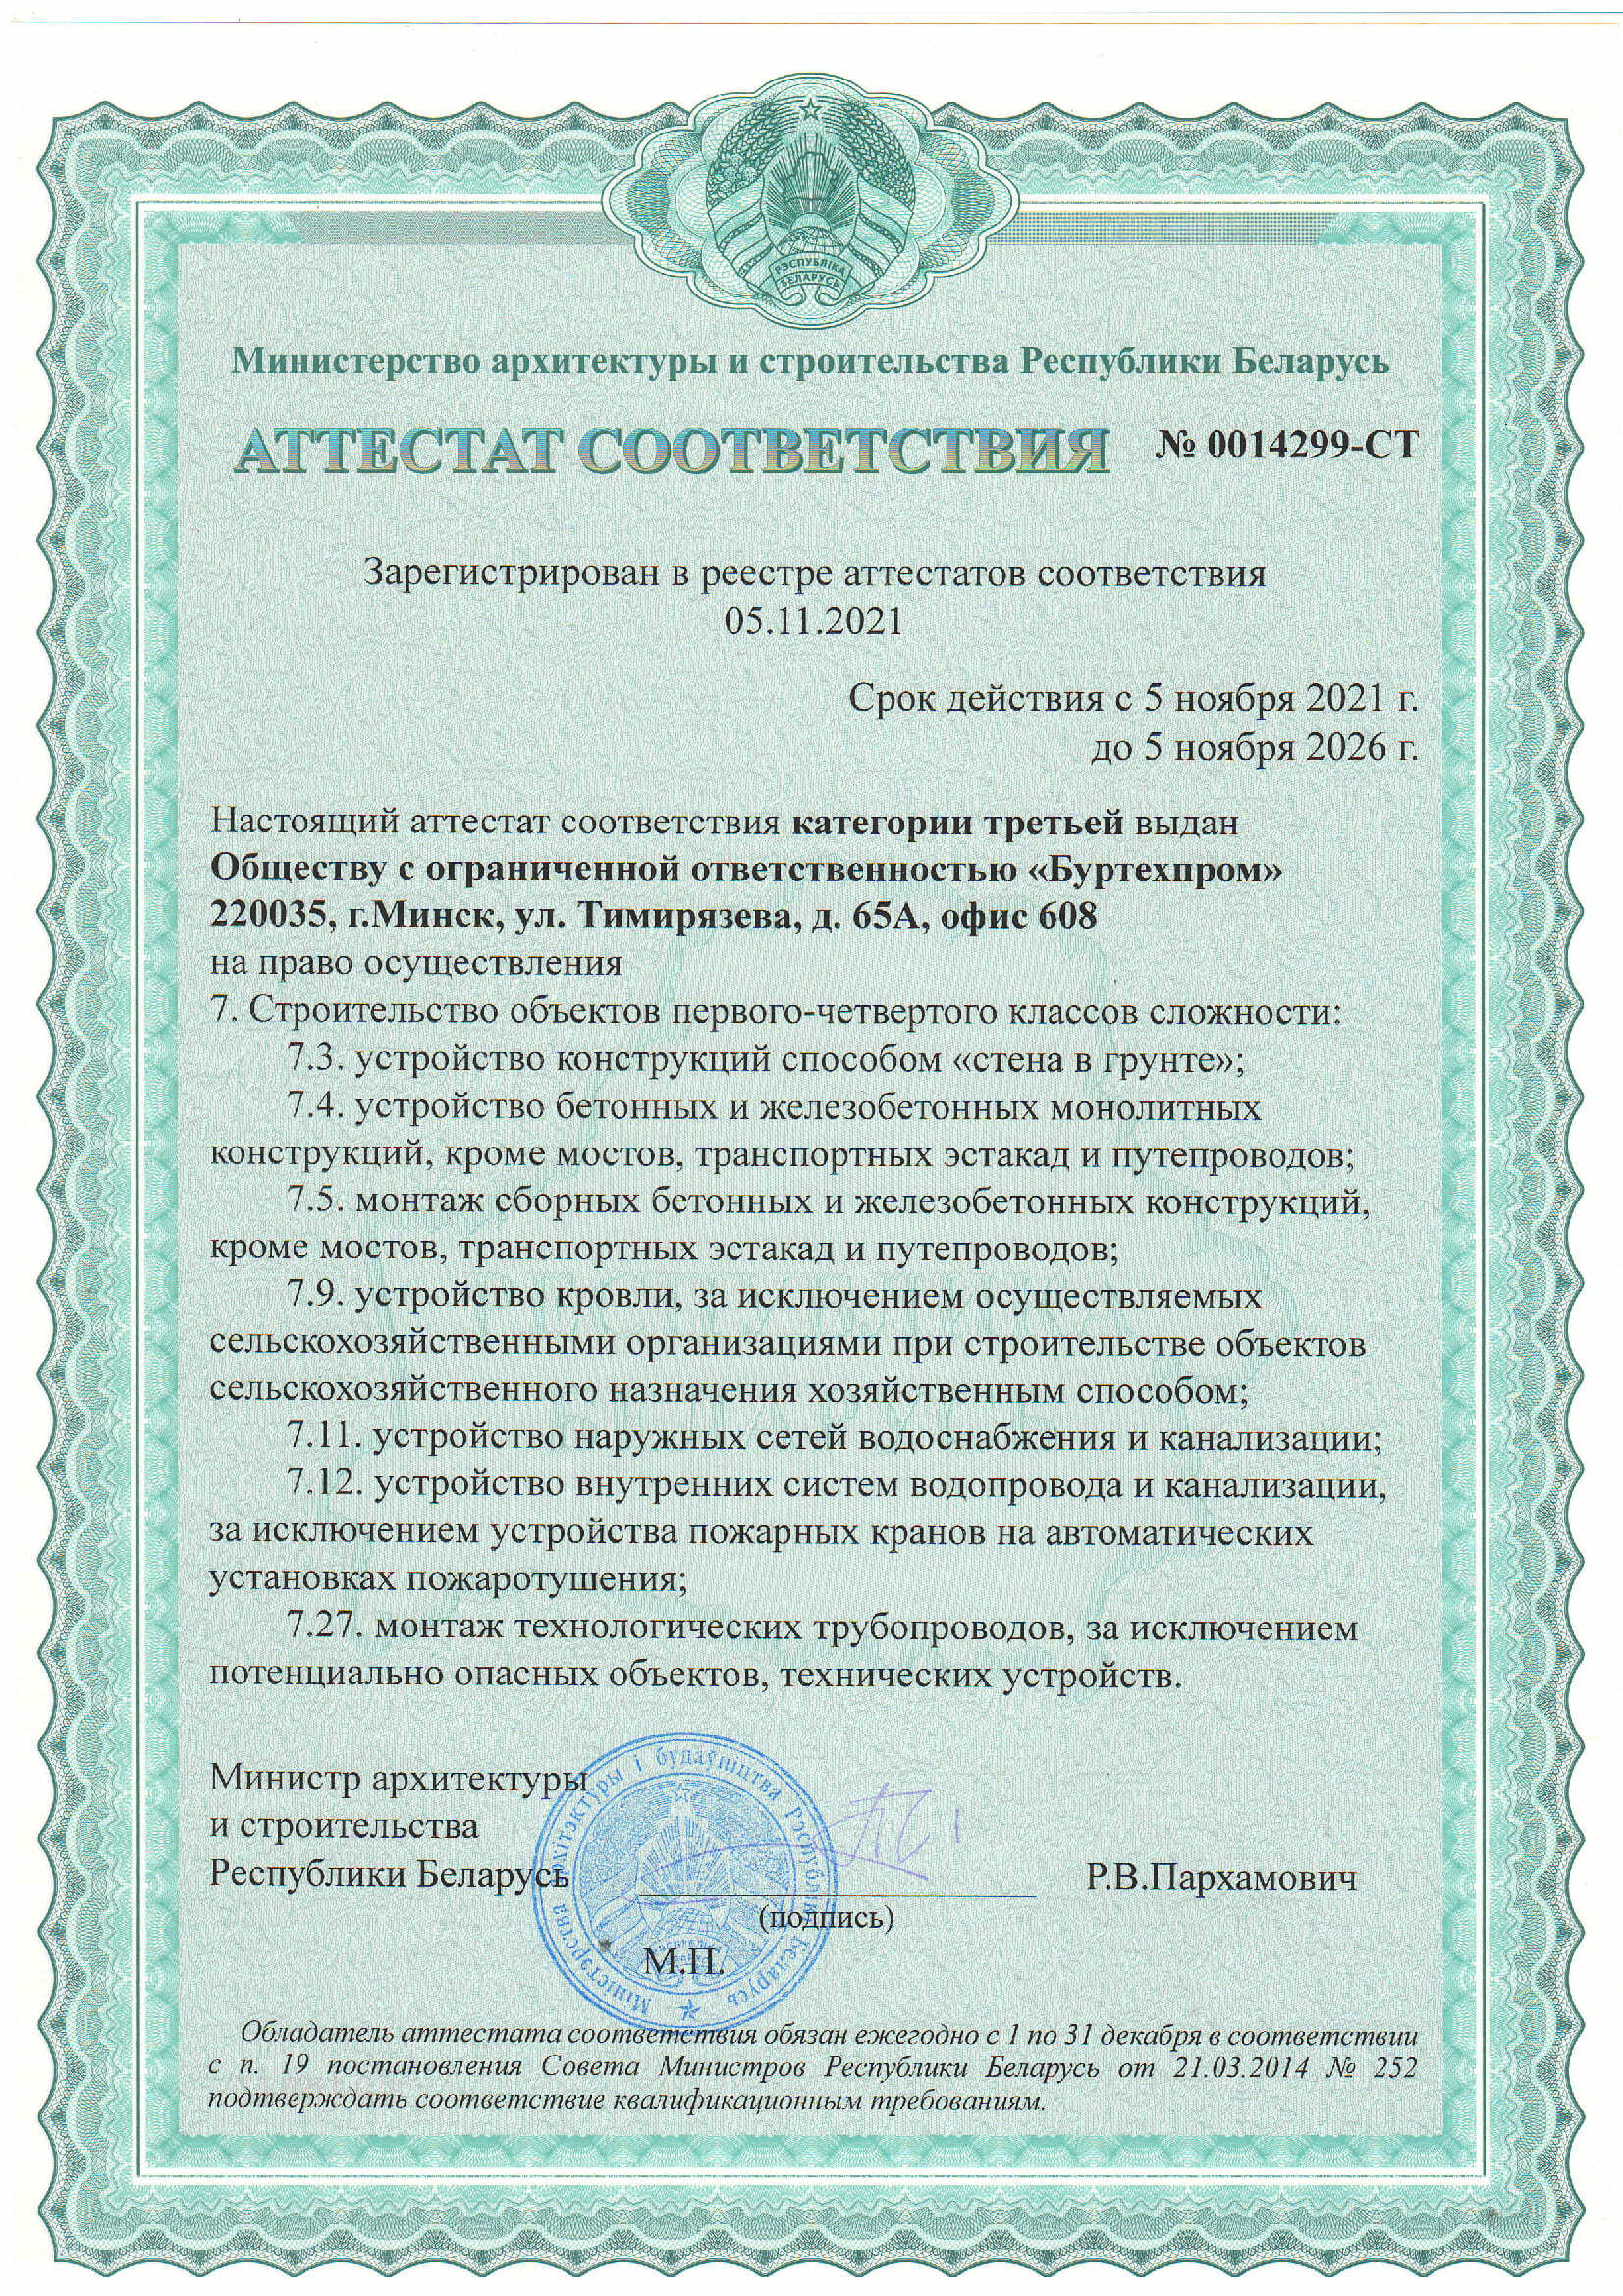 Аттестат соответствия категории третьей Министерства архитектуры и строительства РБ ООО Буртехпром на право осуществления строительства объектов первого-четвертого классов сложности 